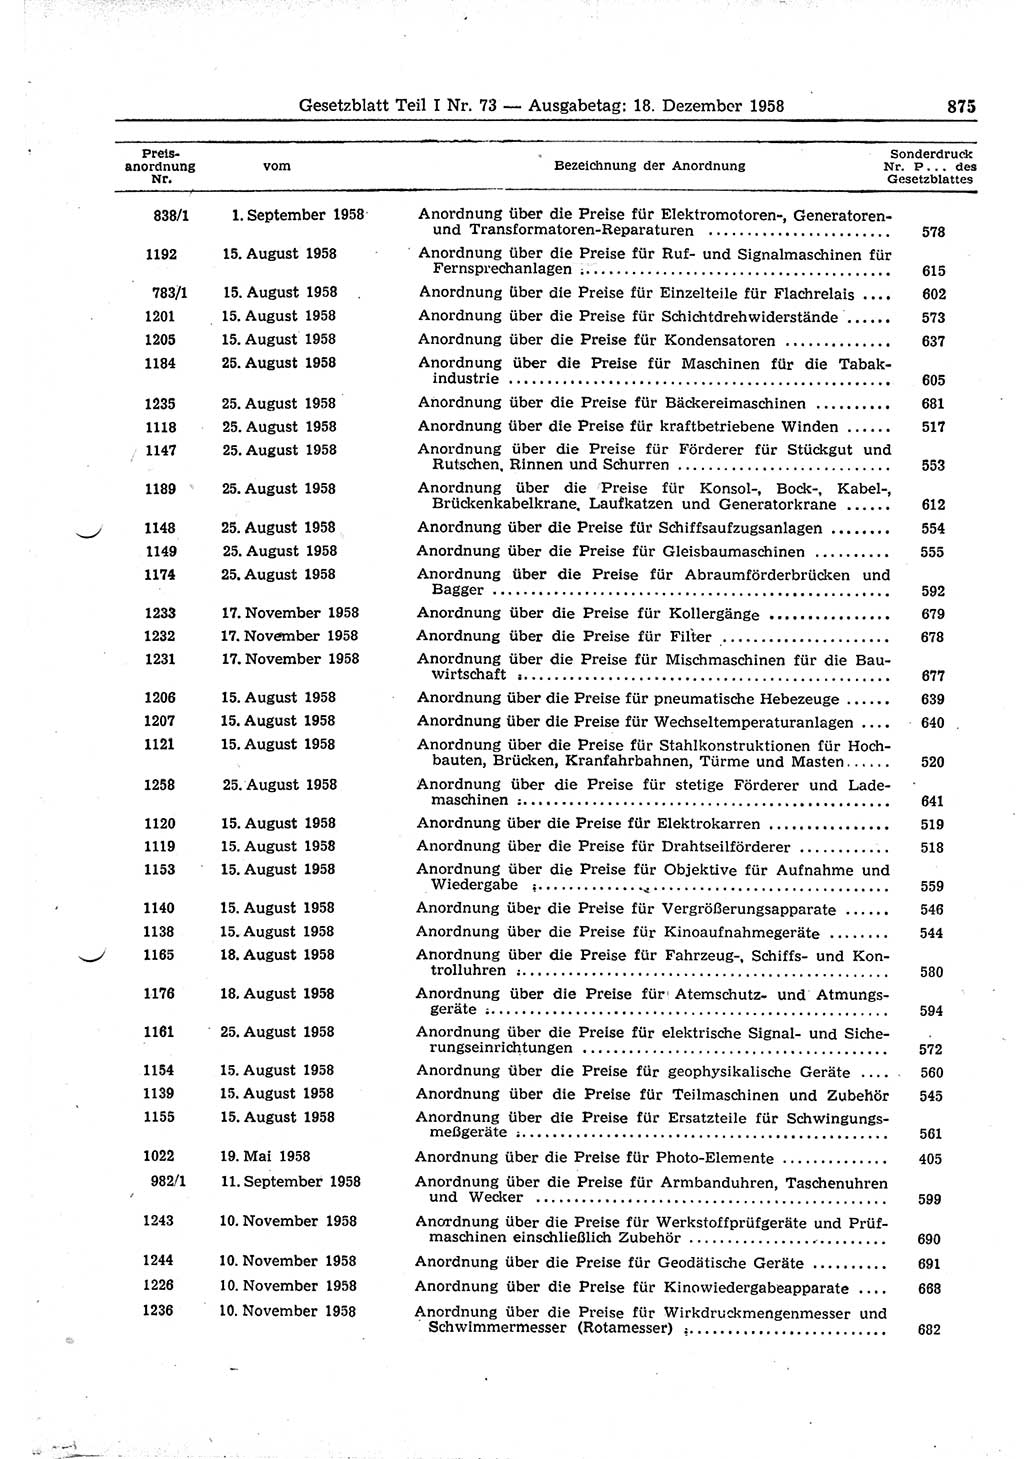 Gesetzblatt (GBl.) der Deutschen Demokratischen Republik (DDR) Teil Ⅰ 1958, Seite 875 (GBl. DDR Ⅰ 1958, S. 875)